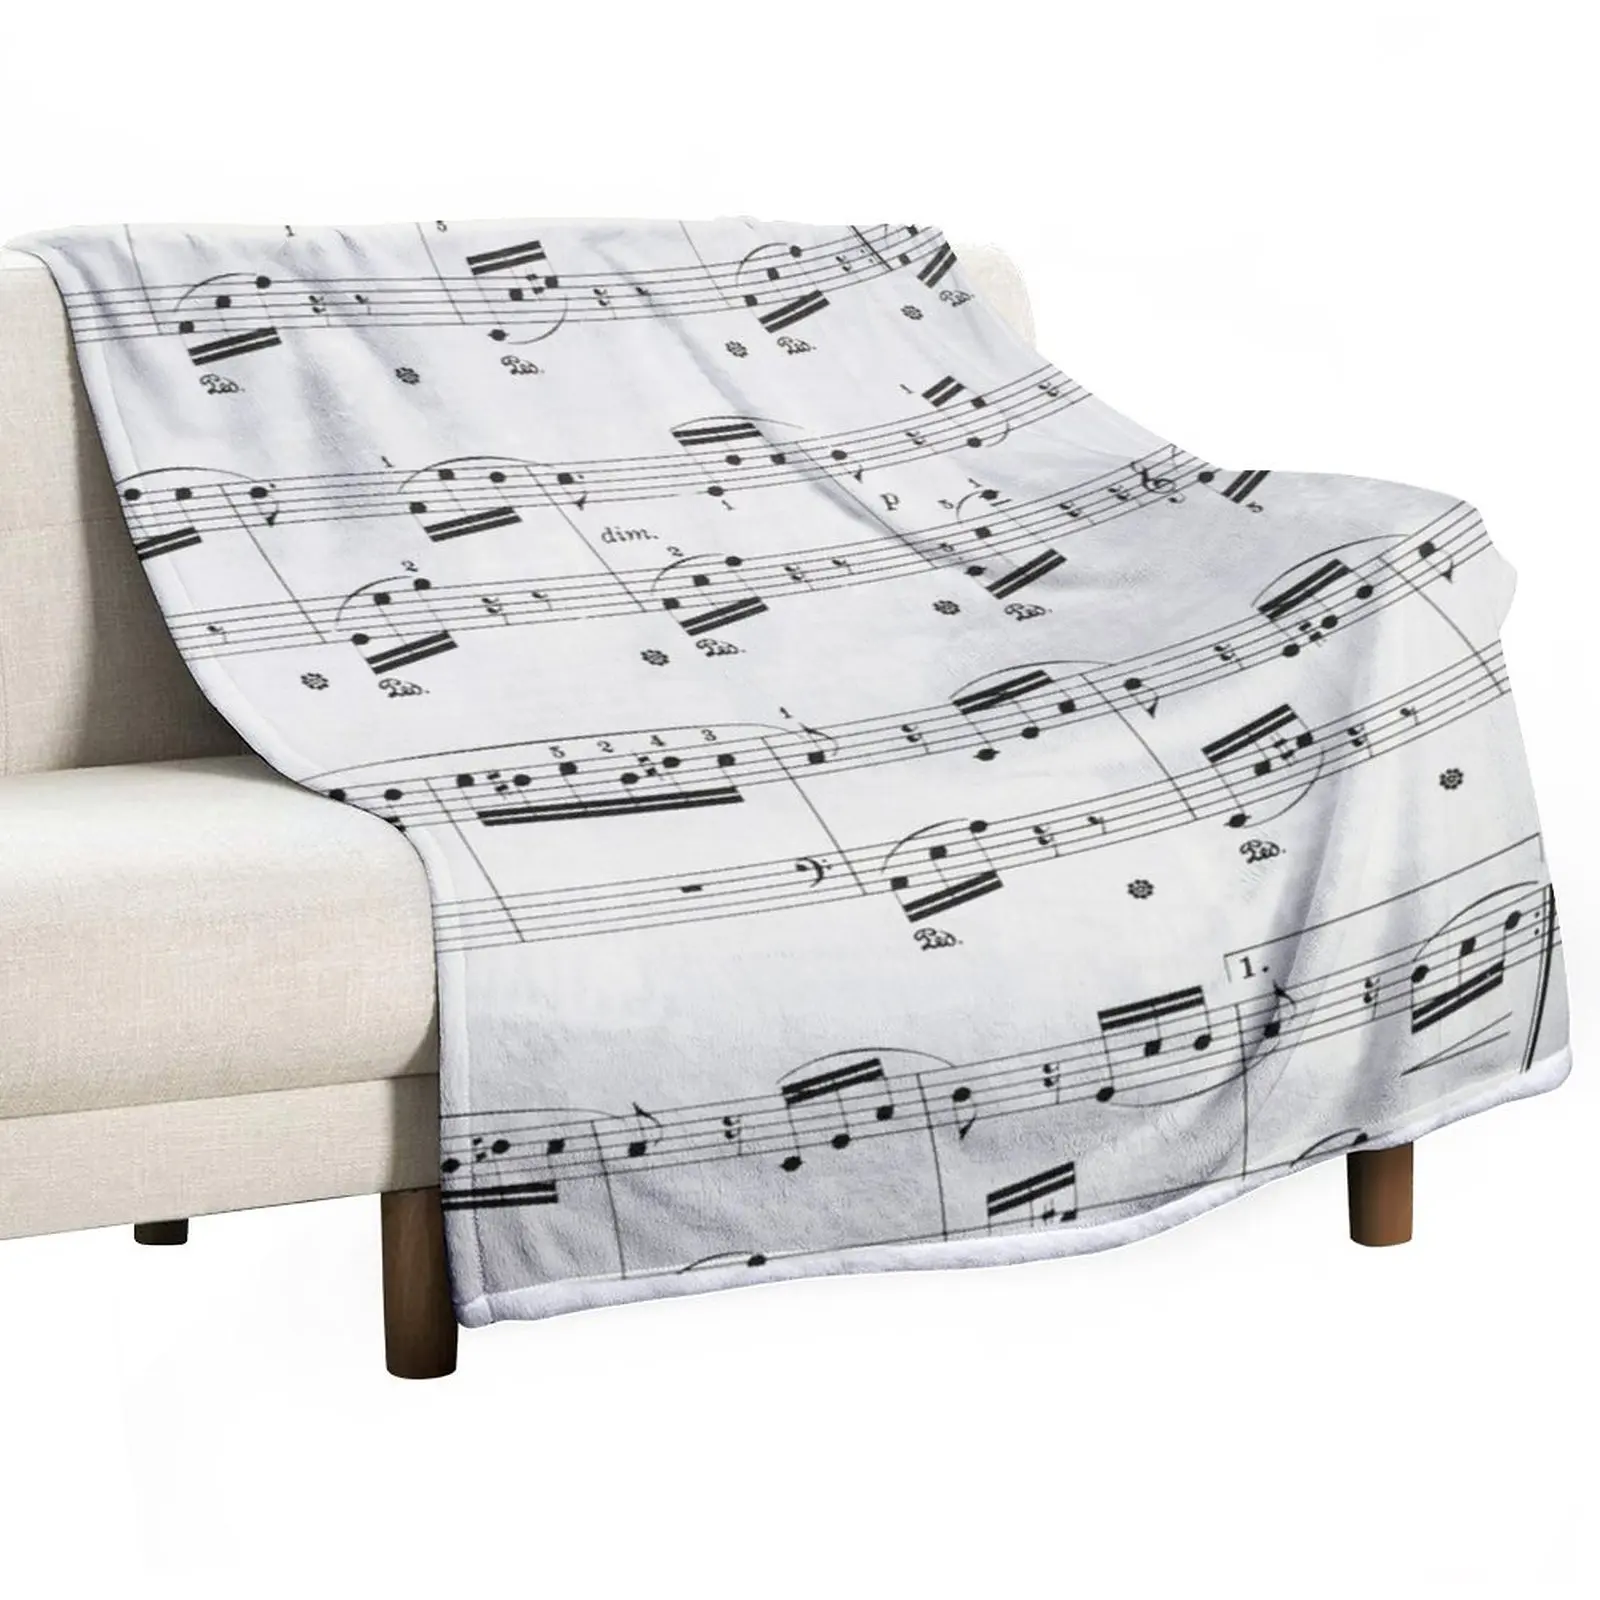 

Fur Elise by Ludwig van Beethoven Throw Blanket Plaid on the sofa Kid'S Blanket Multi-Purpose Winter bed blankets